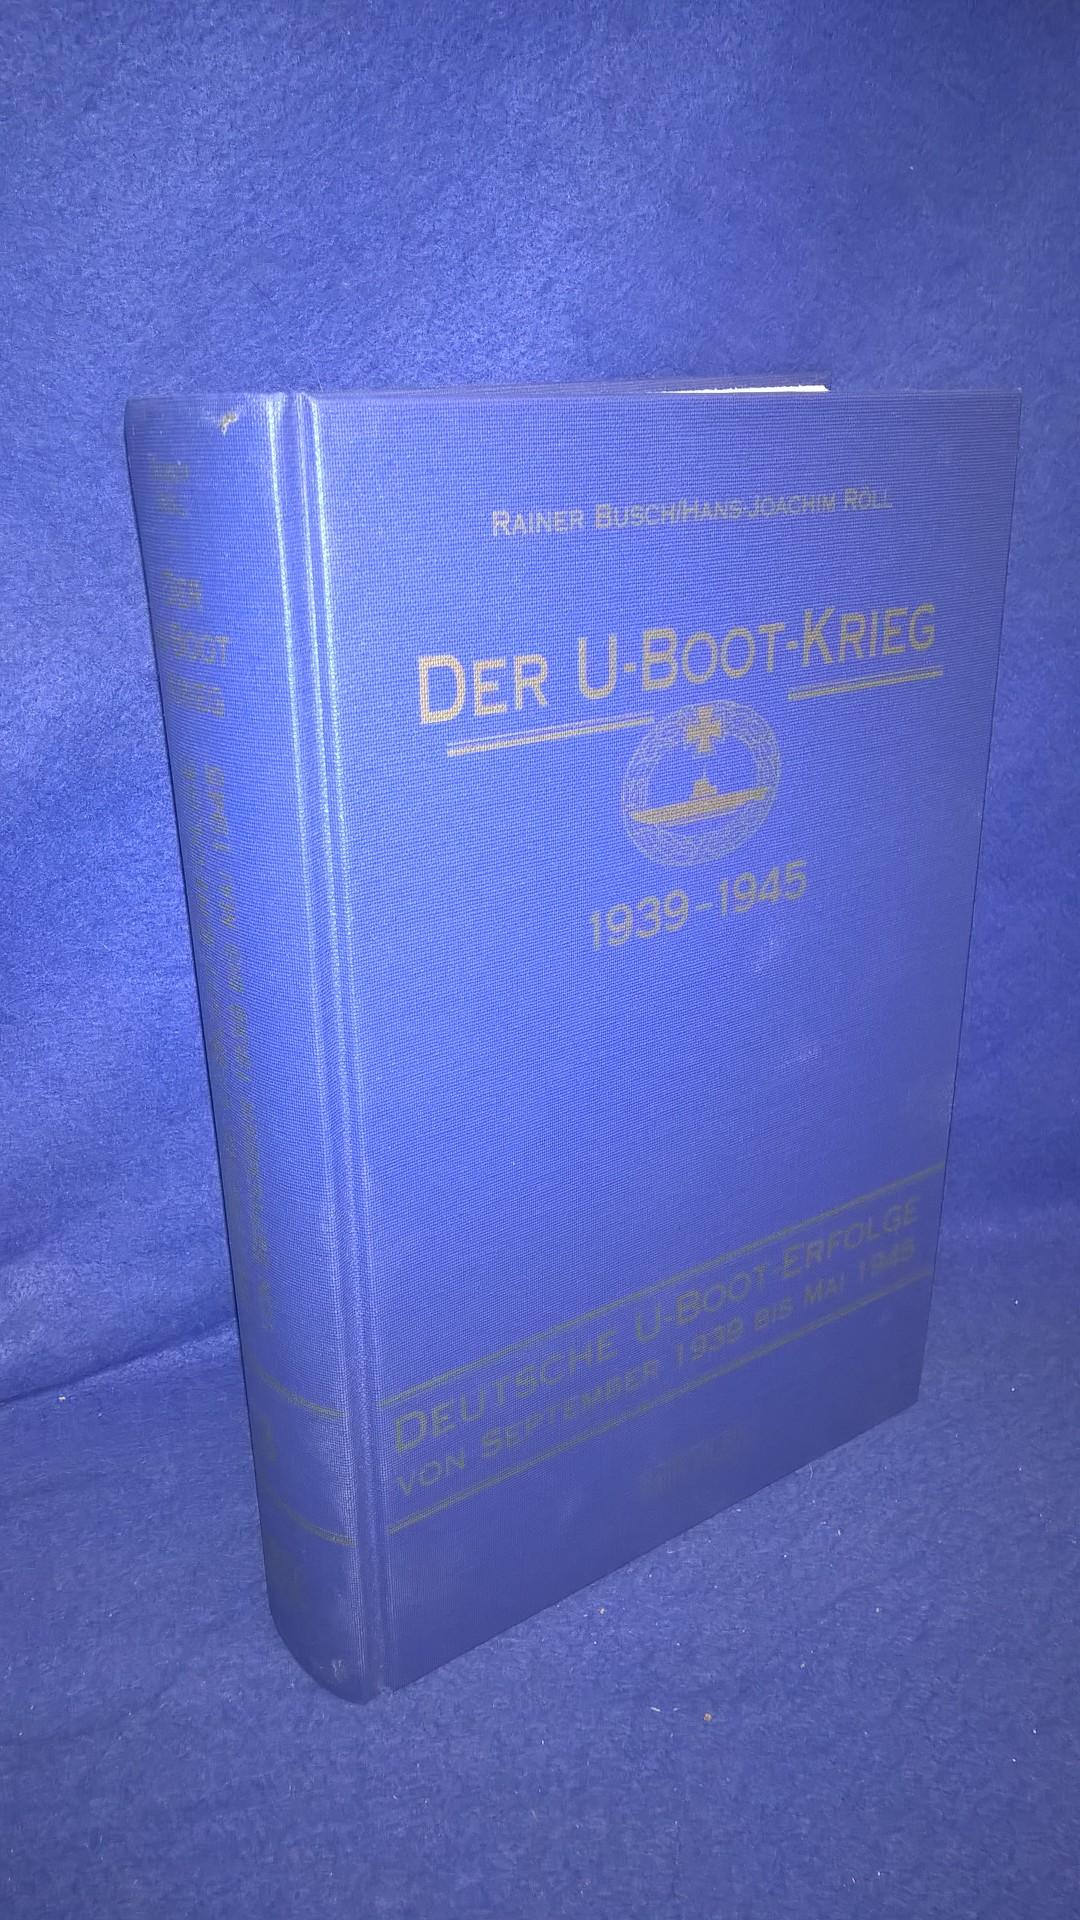  Der U- Boot- Krieg 1939 - 1945. Band 3:  Deutsche U- Boot- Erfolge von September 1939 bis Mai 1945.